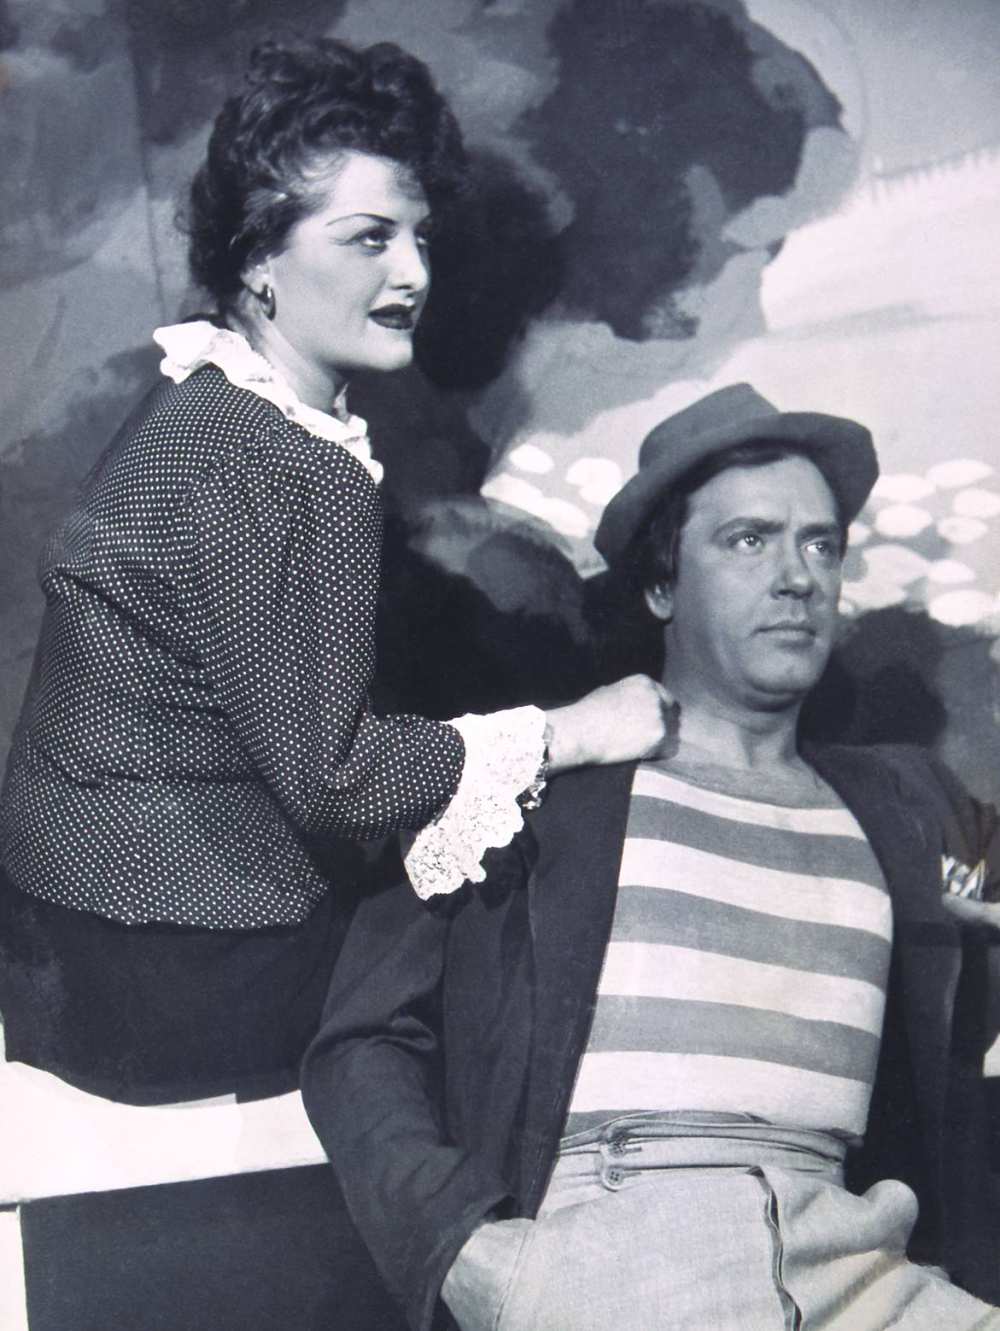 Pogány Margit és Benkő Gyula a Liliomban, Pesti Színház, 1948, Rozgonyi felvétele – Színháztörténeti és Zeneműtár